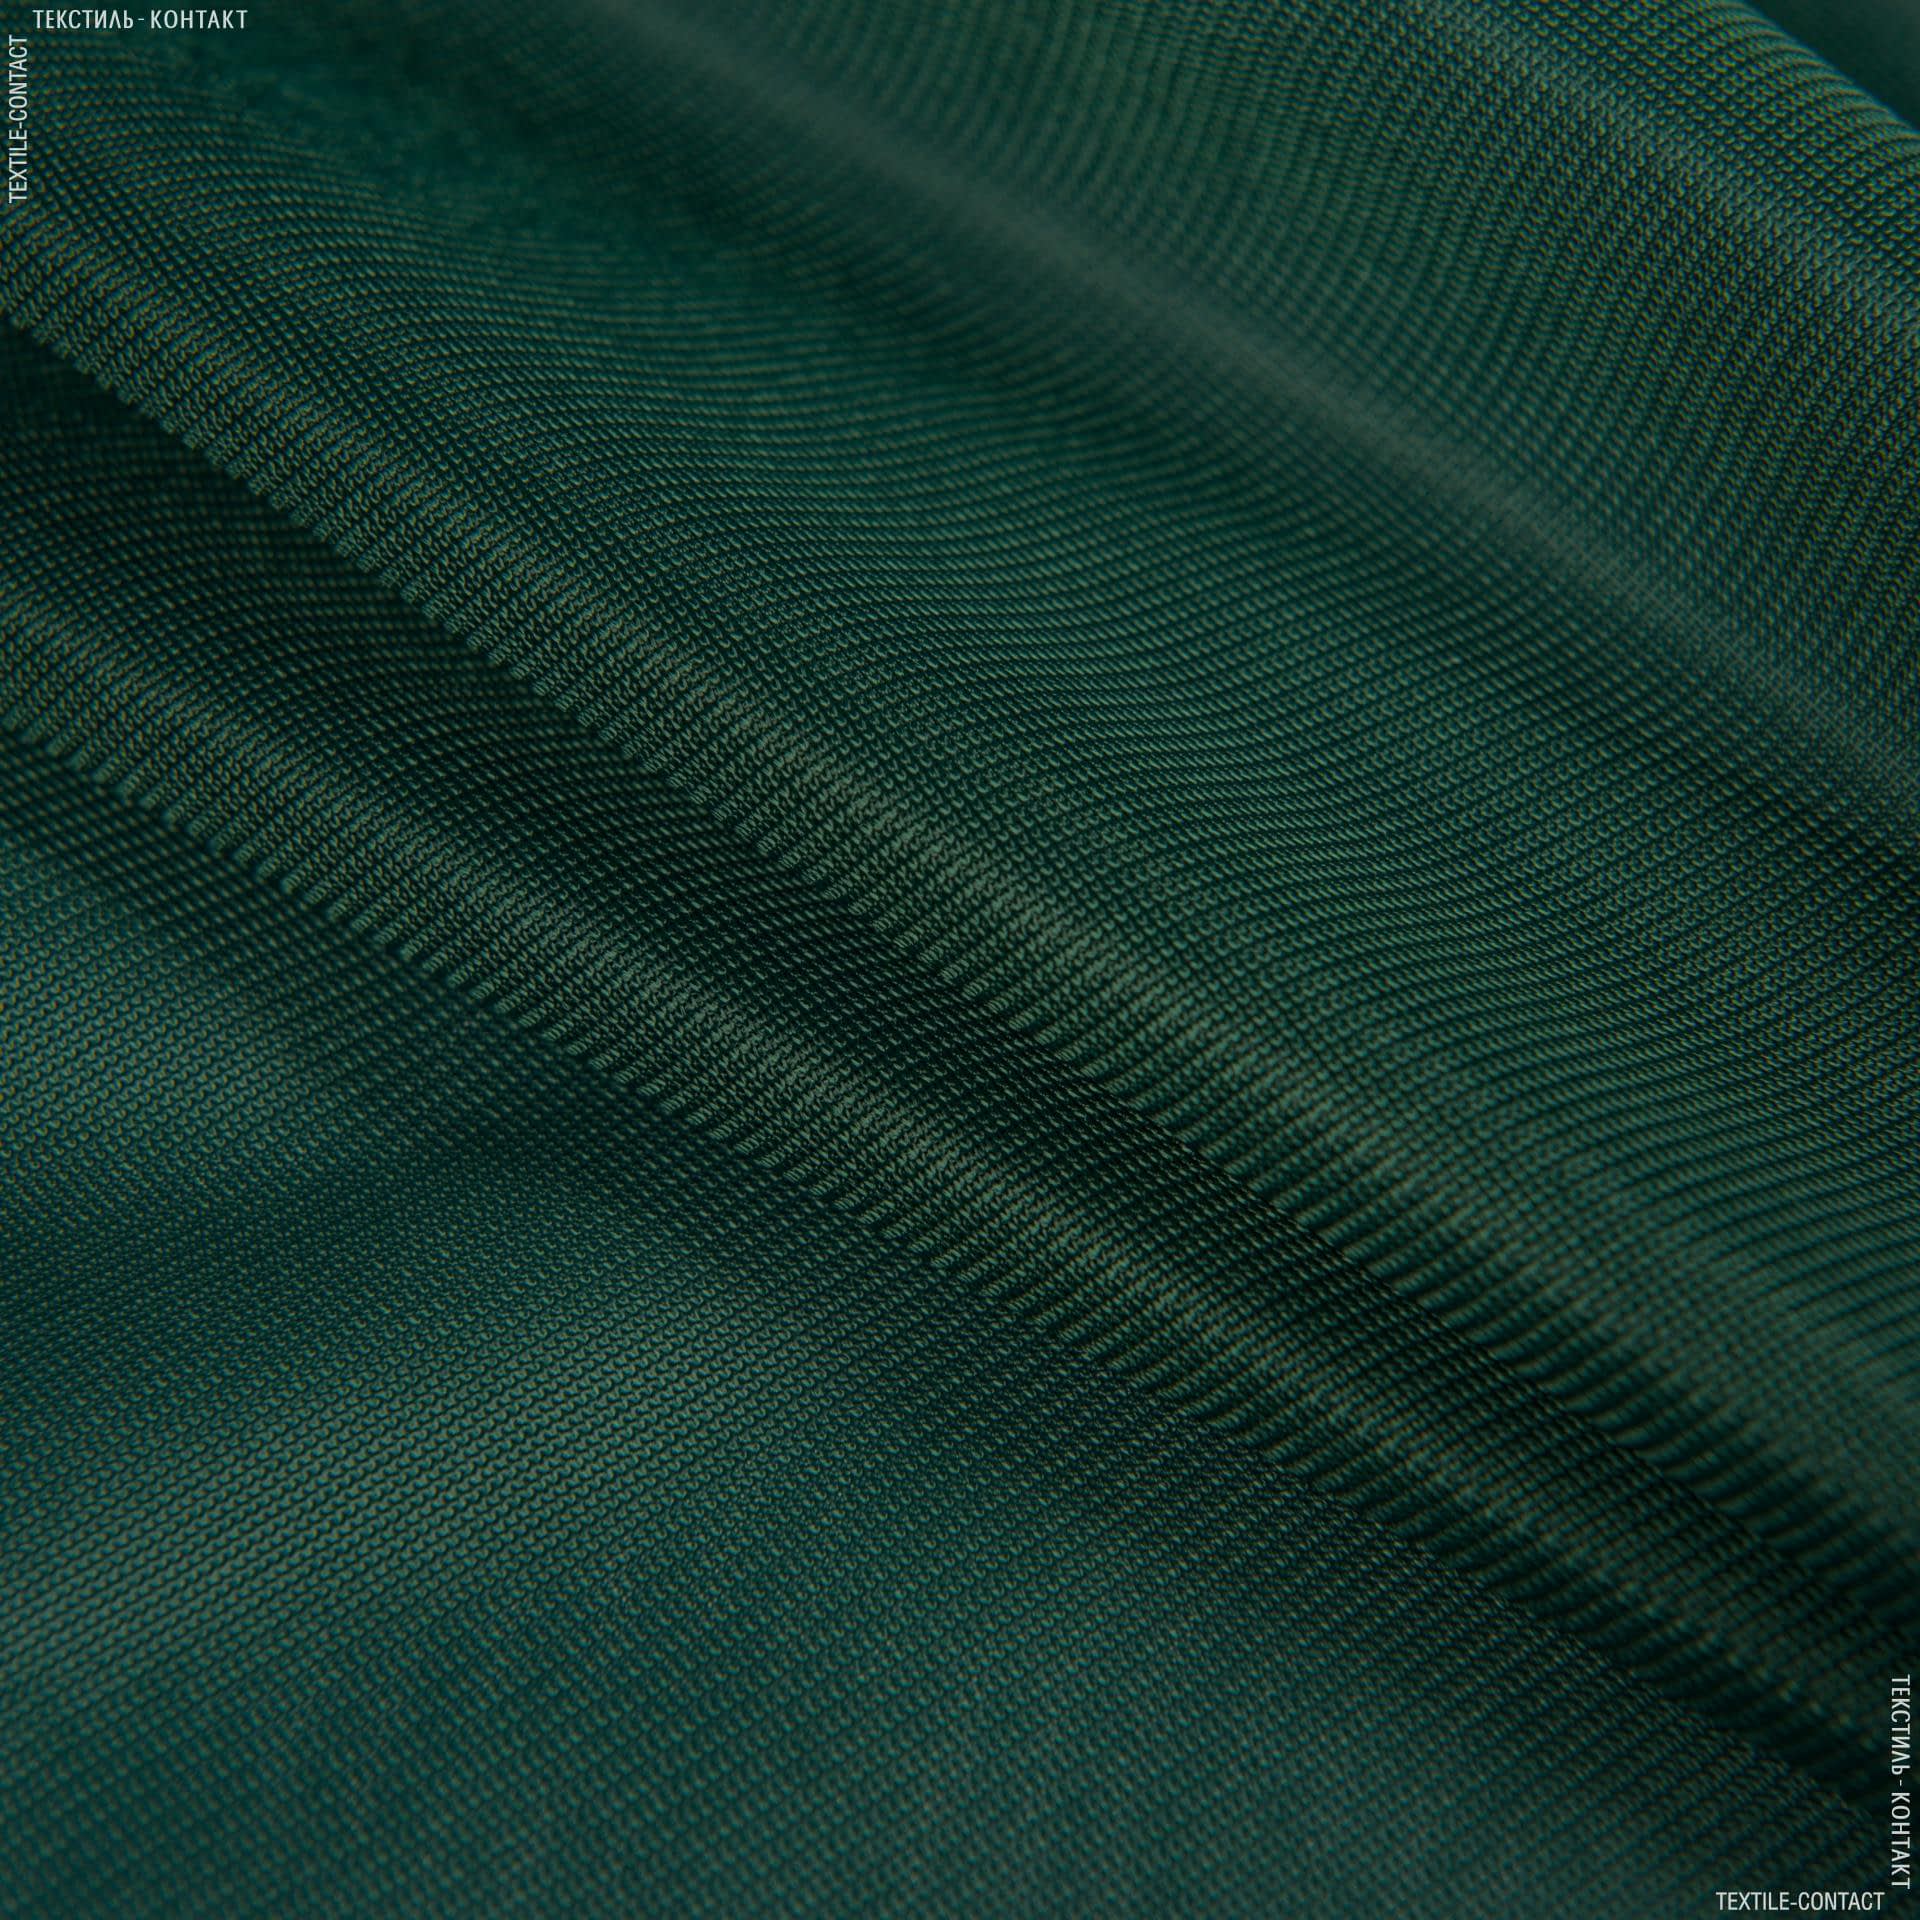 Ткани для спецодежды - Нейлон трикотажный темно-зеленый